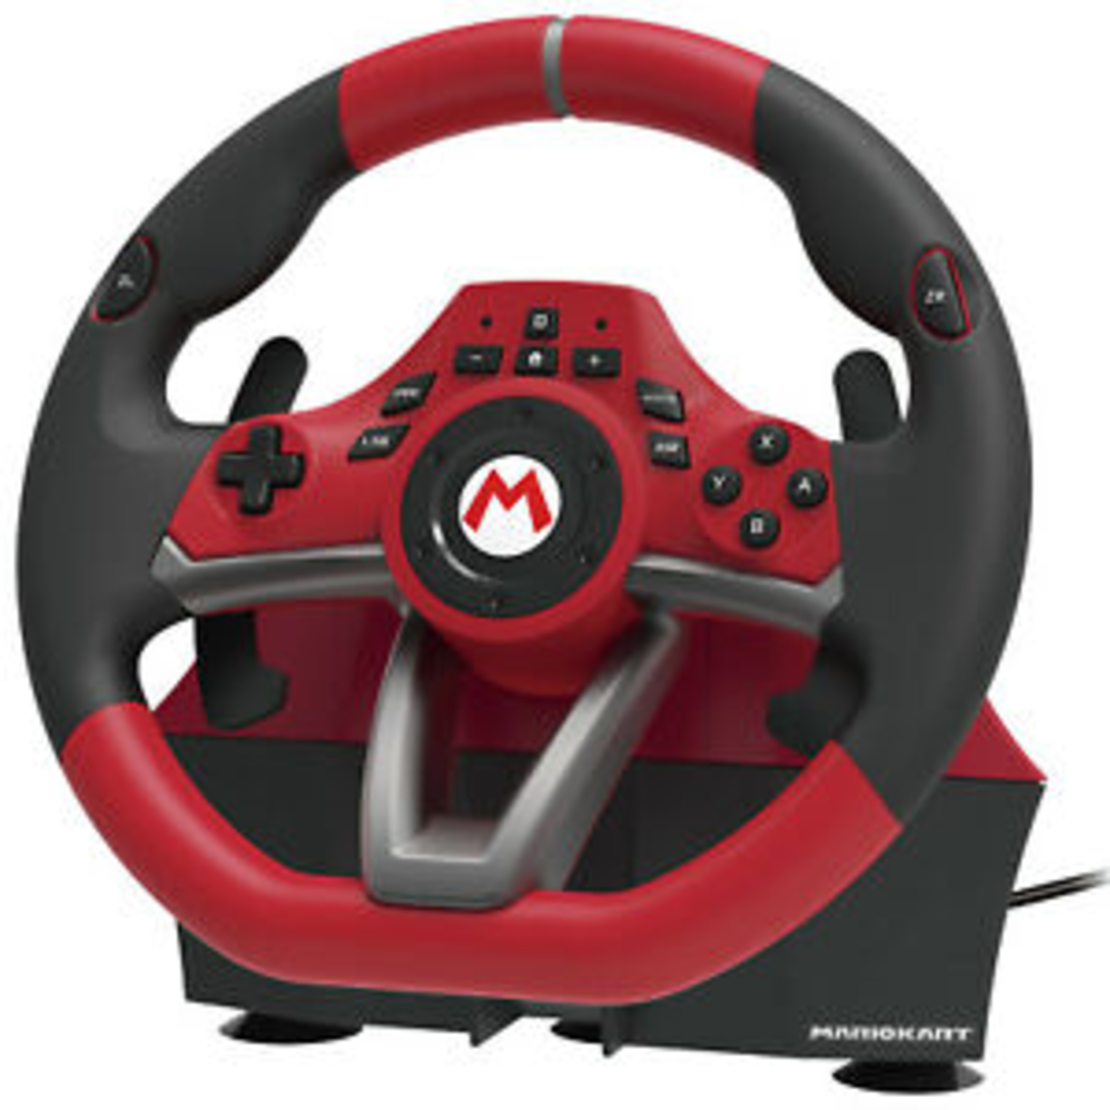 הגה מירוצים עם דוושות HORI MarioKart Racing Wheel Pro Deluxe